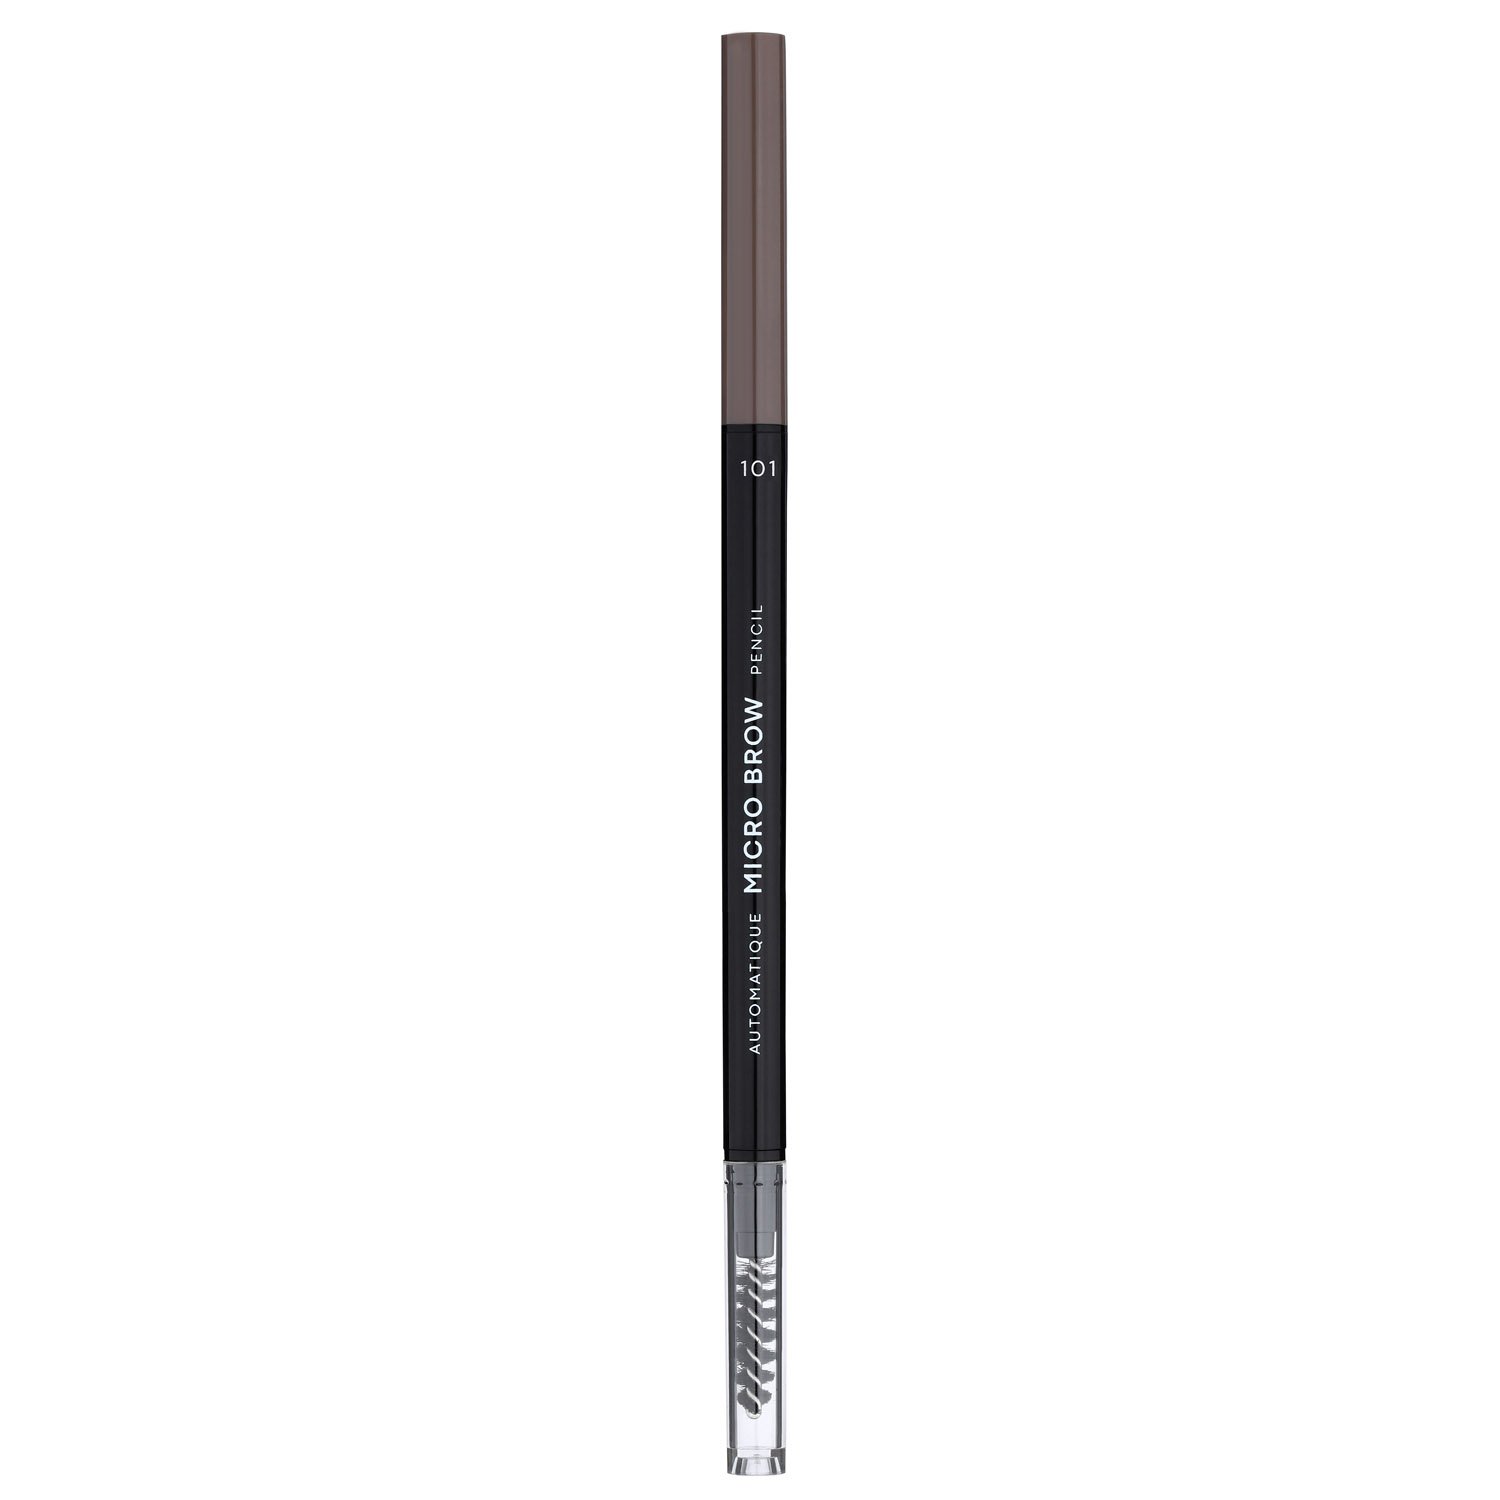 Карандаш для бровей LN Professional Micro Brow Pencil тон 101, 0.12 г - фото 1